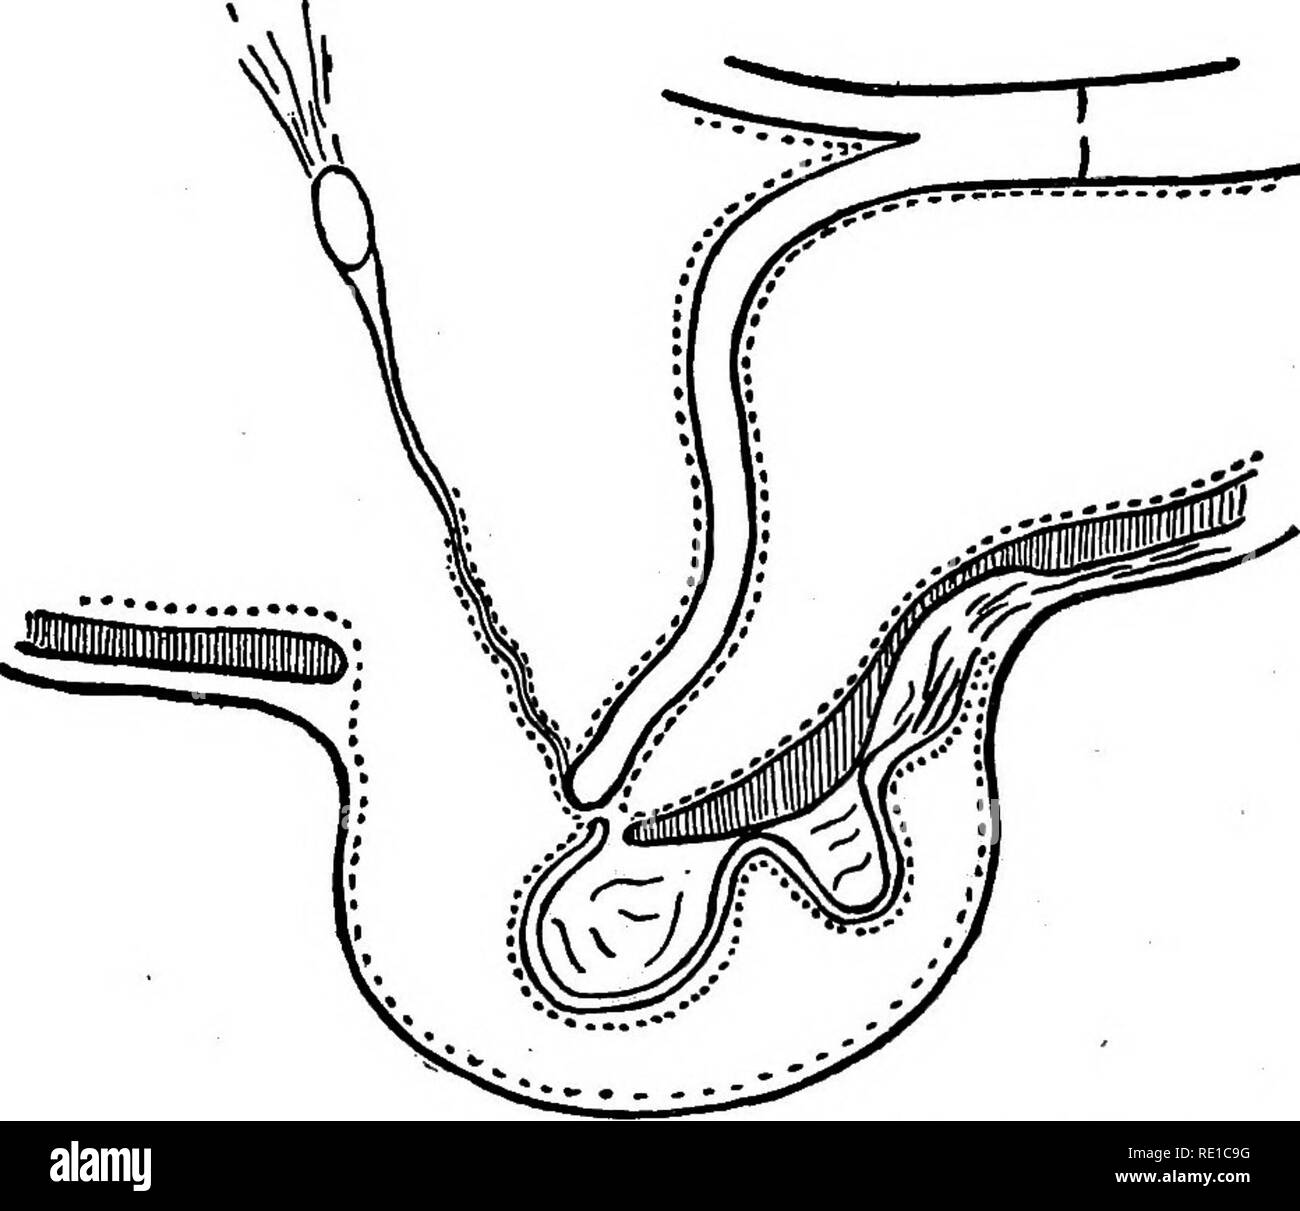 Enfermedades Quirúrgicas y Cirugía del perro. Los perros. Nº 61. Diagrama que ilustra la posición normal de las piezas. Diagrama que ilustra el mecanismo de hernia inguinal. Por favor